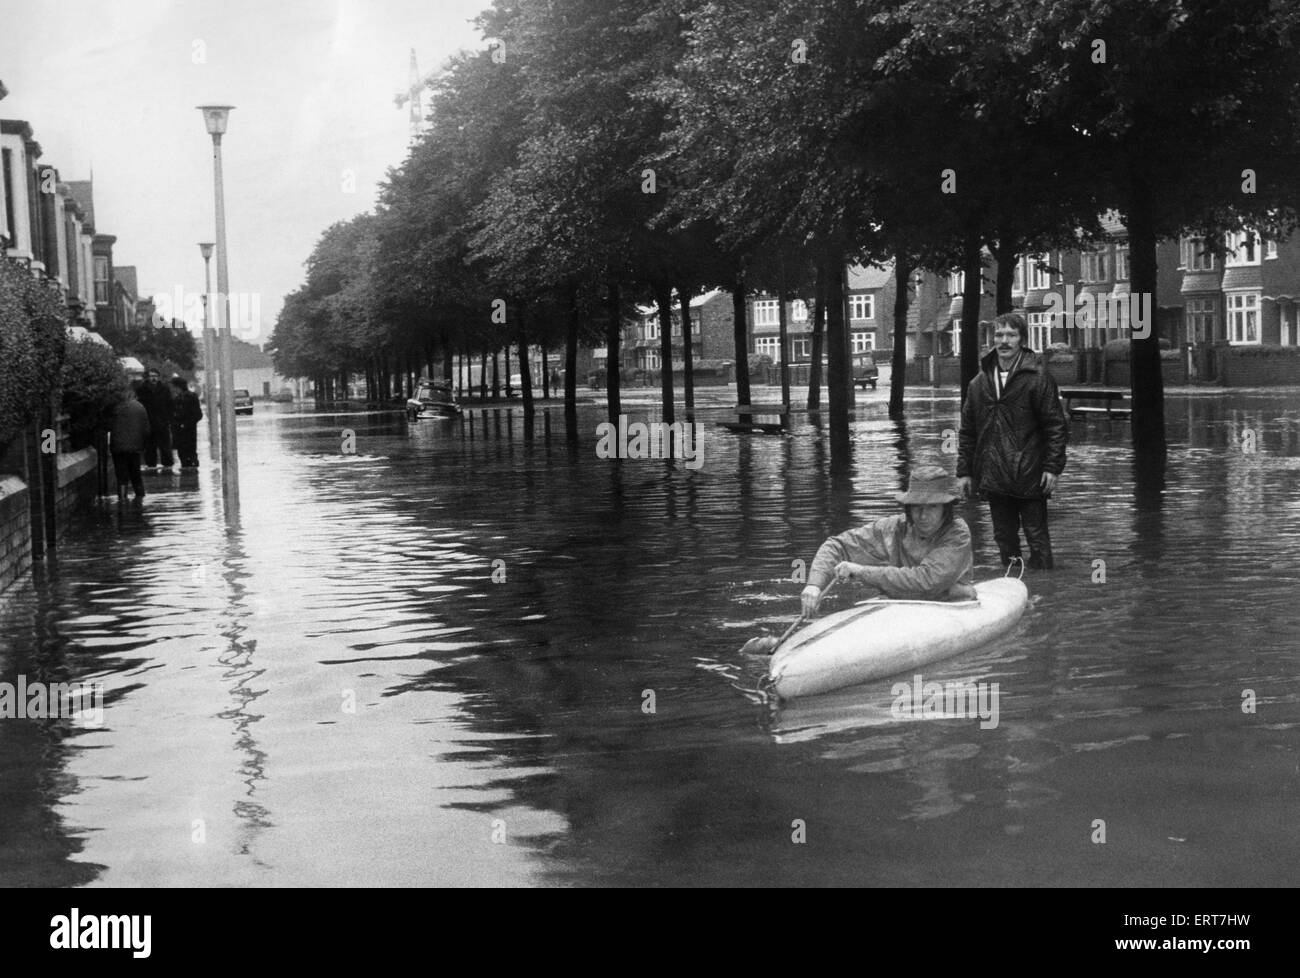 David Baker de Croydon Road Middlesbrough ha encontrado una manera de vencer las inundaciones barriendo la región. El 14 de agosto de 1971 Foto de stock